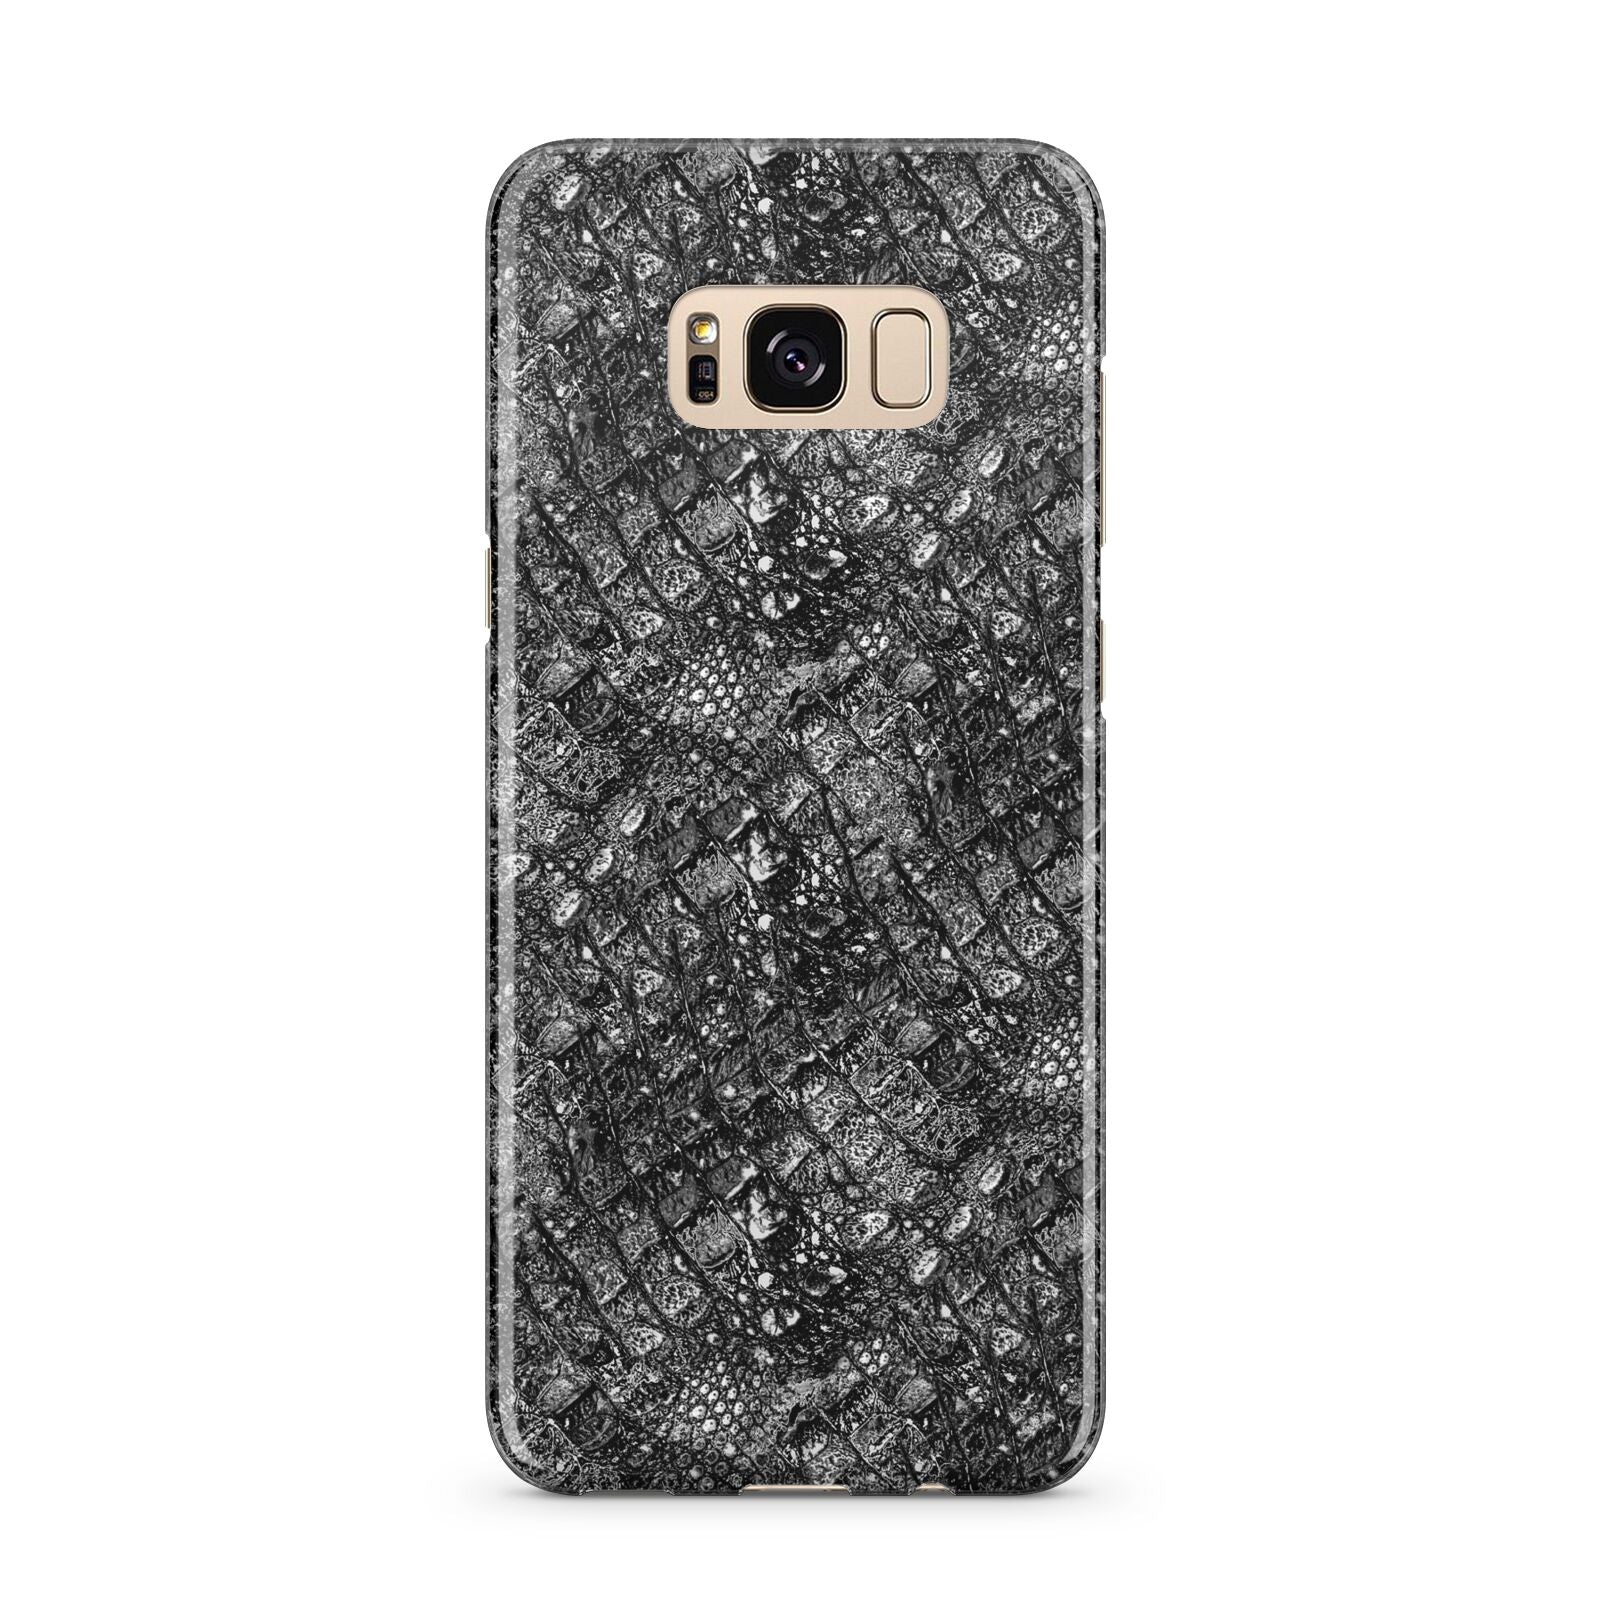 Snakeskin Design Samsung Galaxy S8 Plus Case